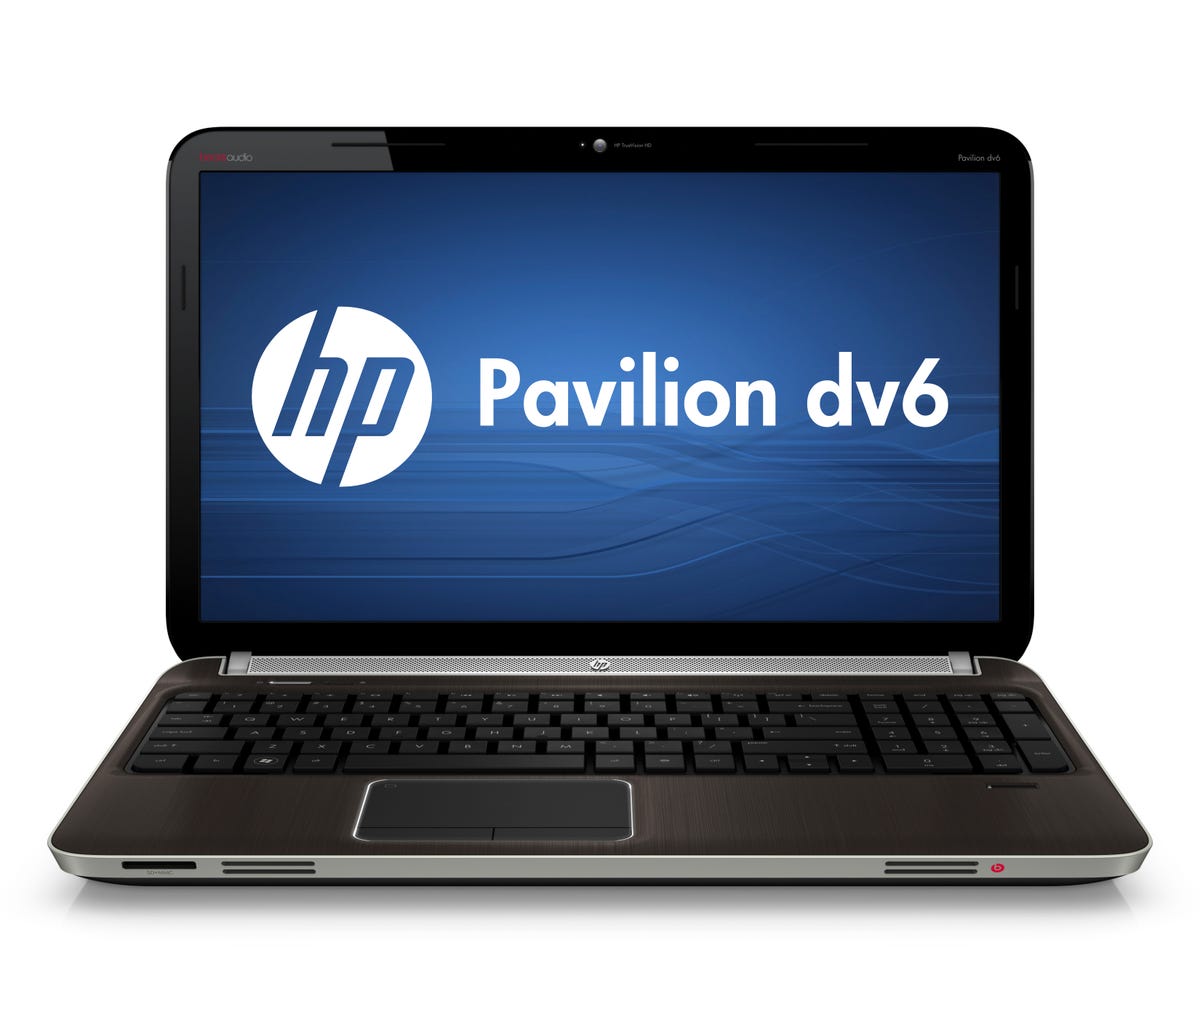 HP_Pavilion_dv6_Image_1.jpg